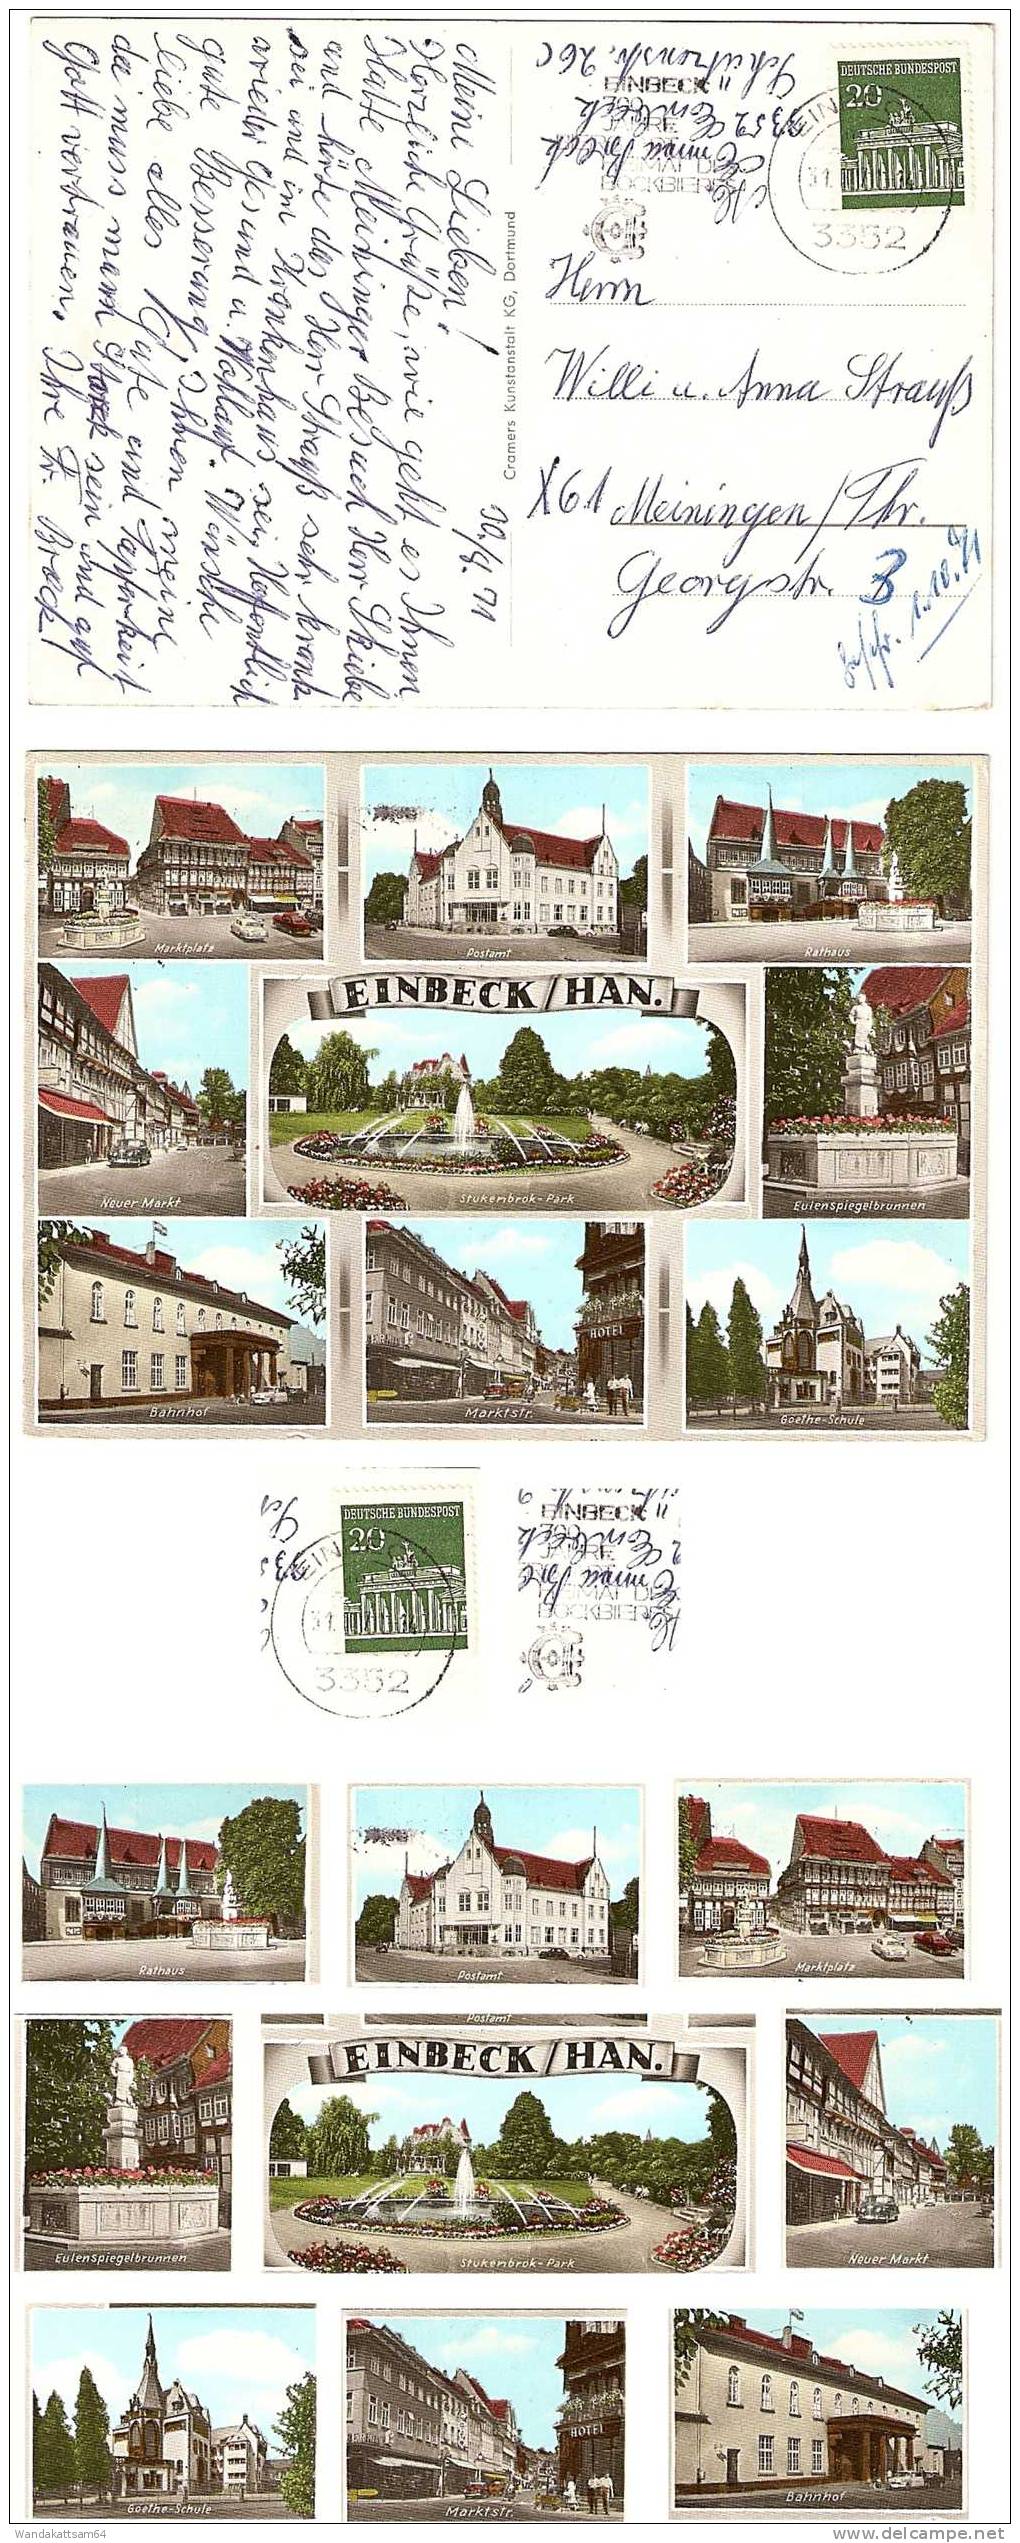 AK EINBECK / HAN. Mehrbild 9 B Marktplatz Postamt Rathaus 31.8.71 - 14 3352 EINBECK Mc Nach DDR 61 Meiningen / Thüringen - Einbeck